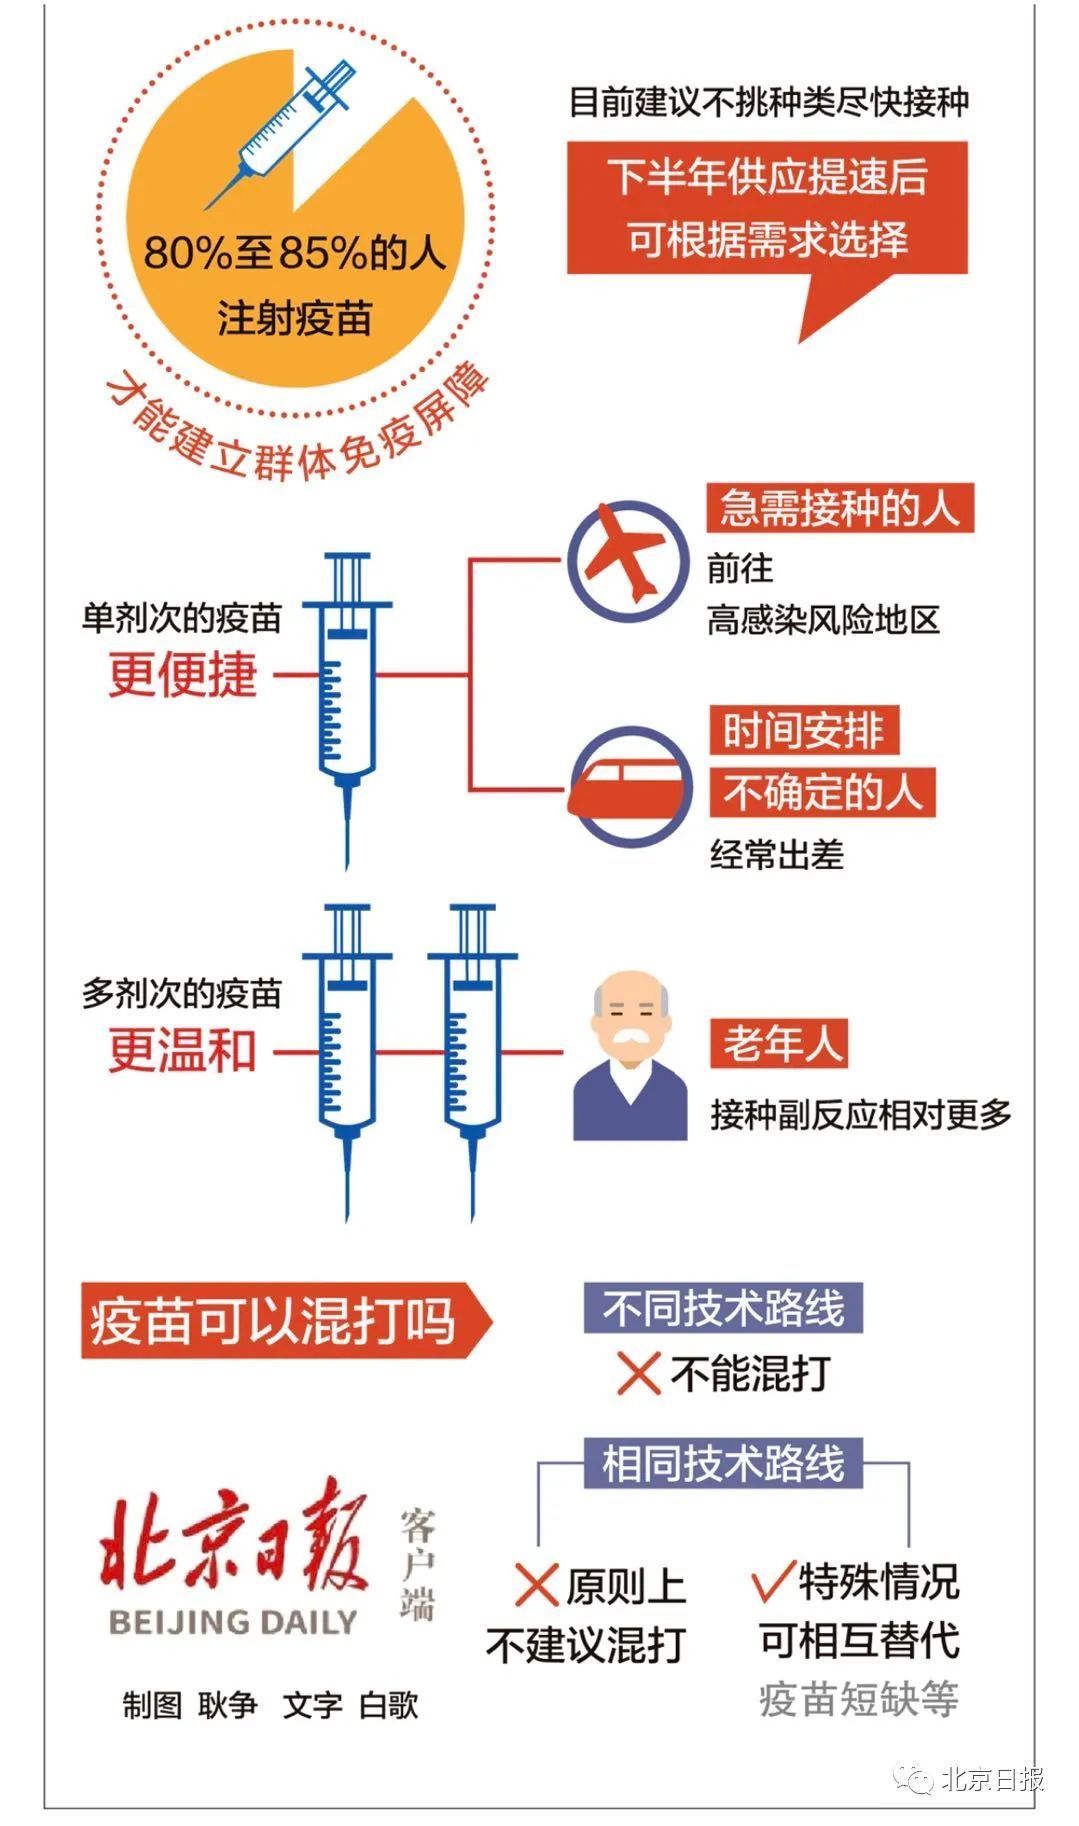 中国疾控中心研究员邵一鸣介绍,三种疫苗接种程序不同,但总体保护率